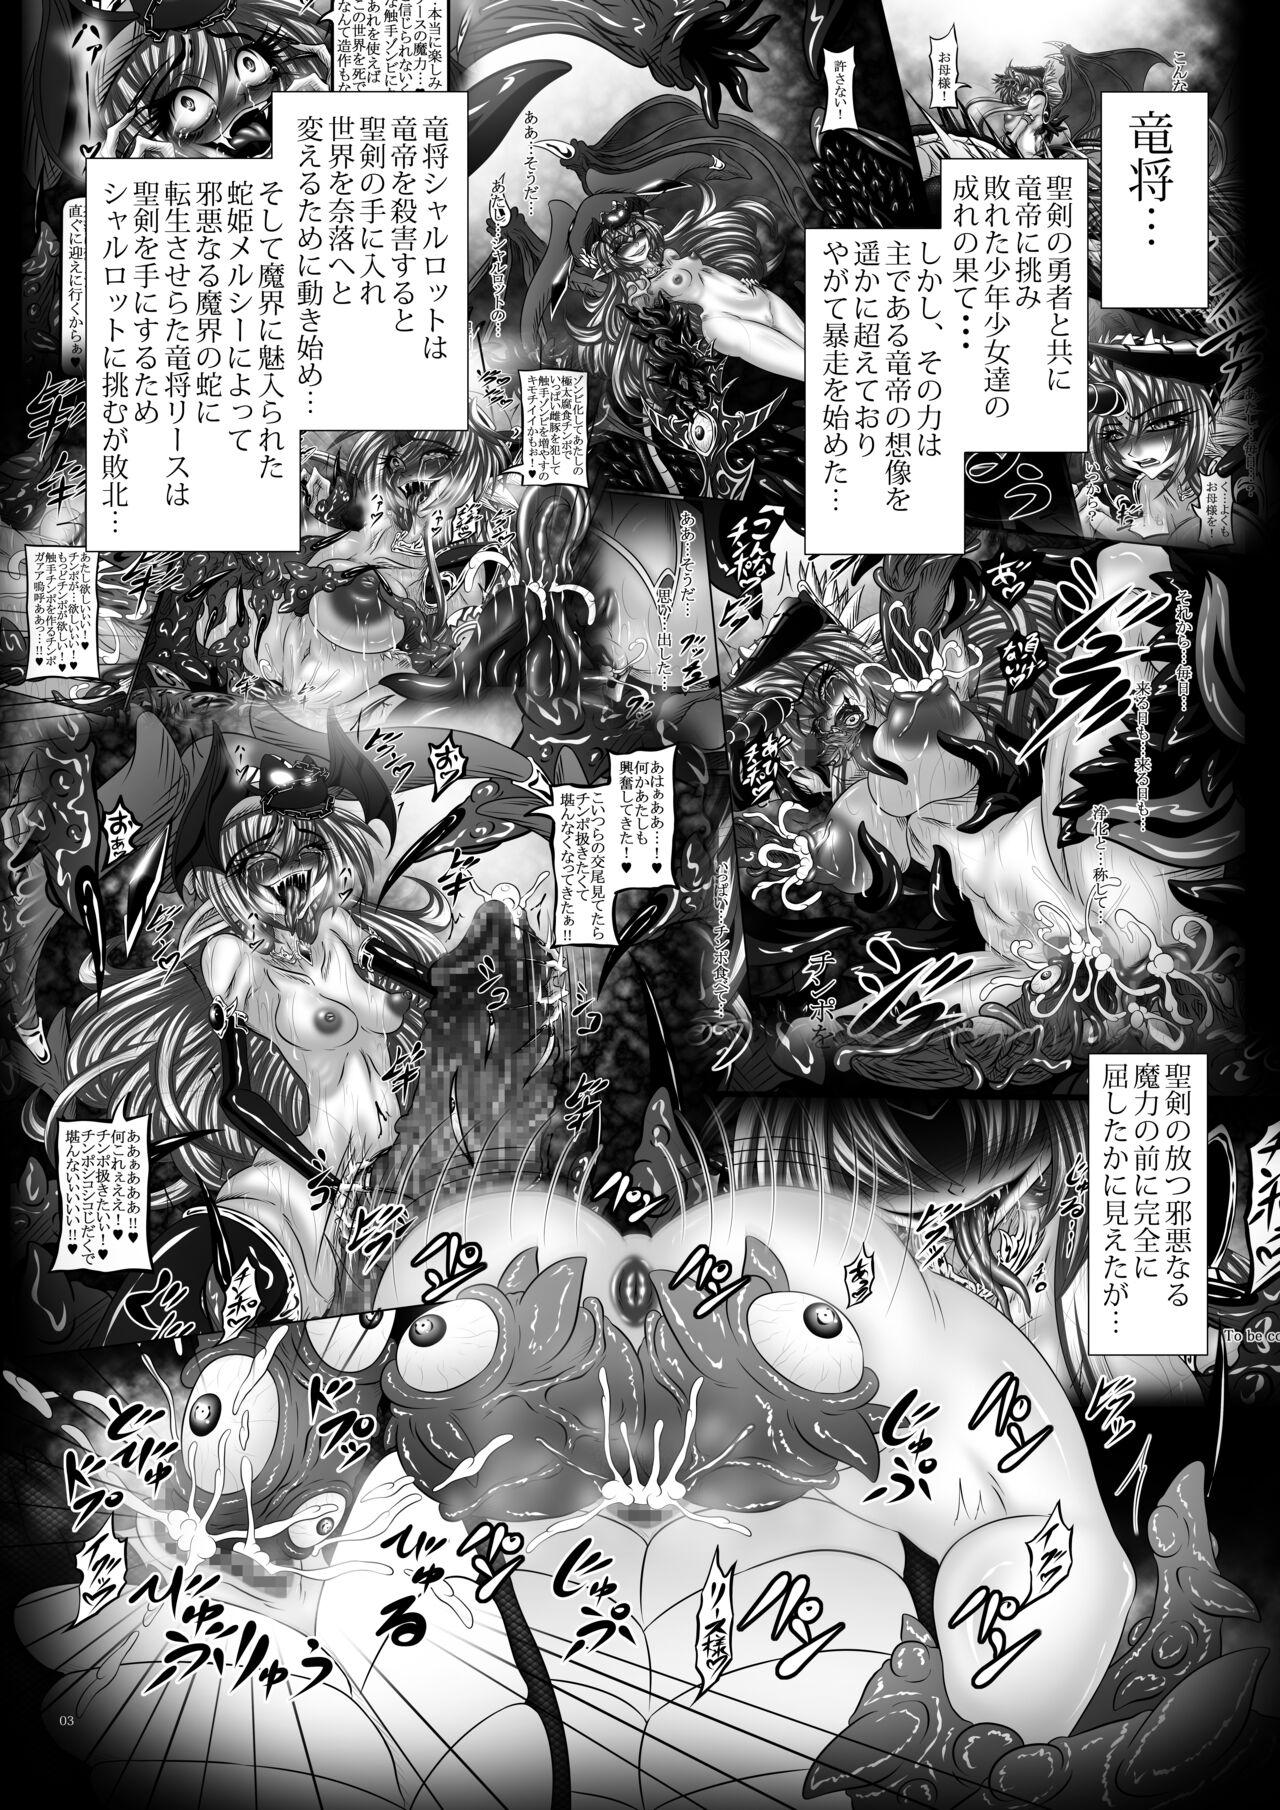 Sextape Dragon' s Fall V - Seiken densetsu 3 Real Couple - Page 2